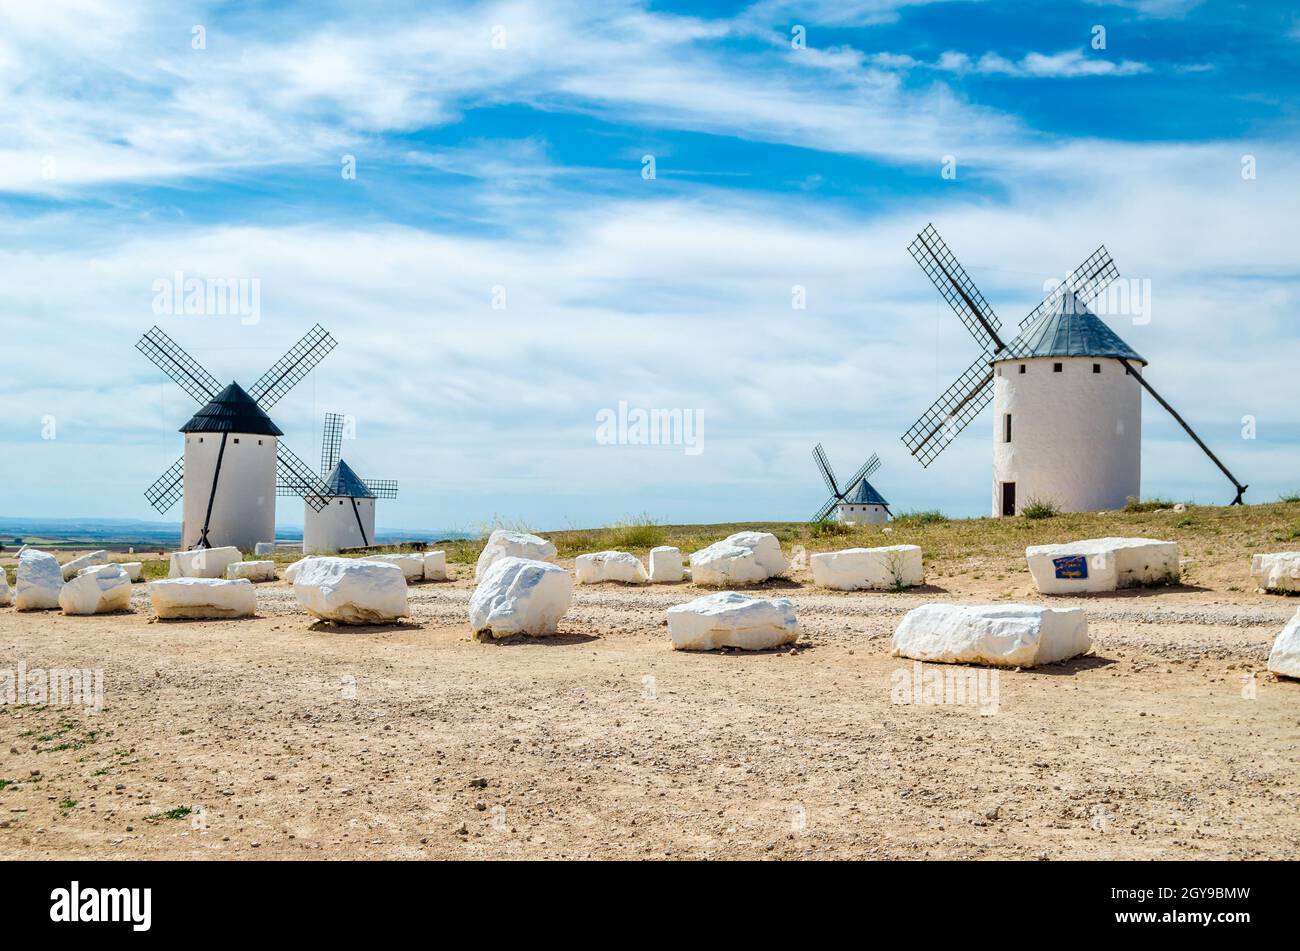 Mulini a vento in campo de Crippana, Spagna, sulla Via Don Chisciotte, basata su un carattere letterario, si riferisce al percorso seguito dal protagonista del Foto Stock